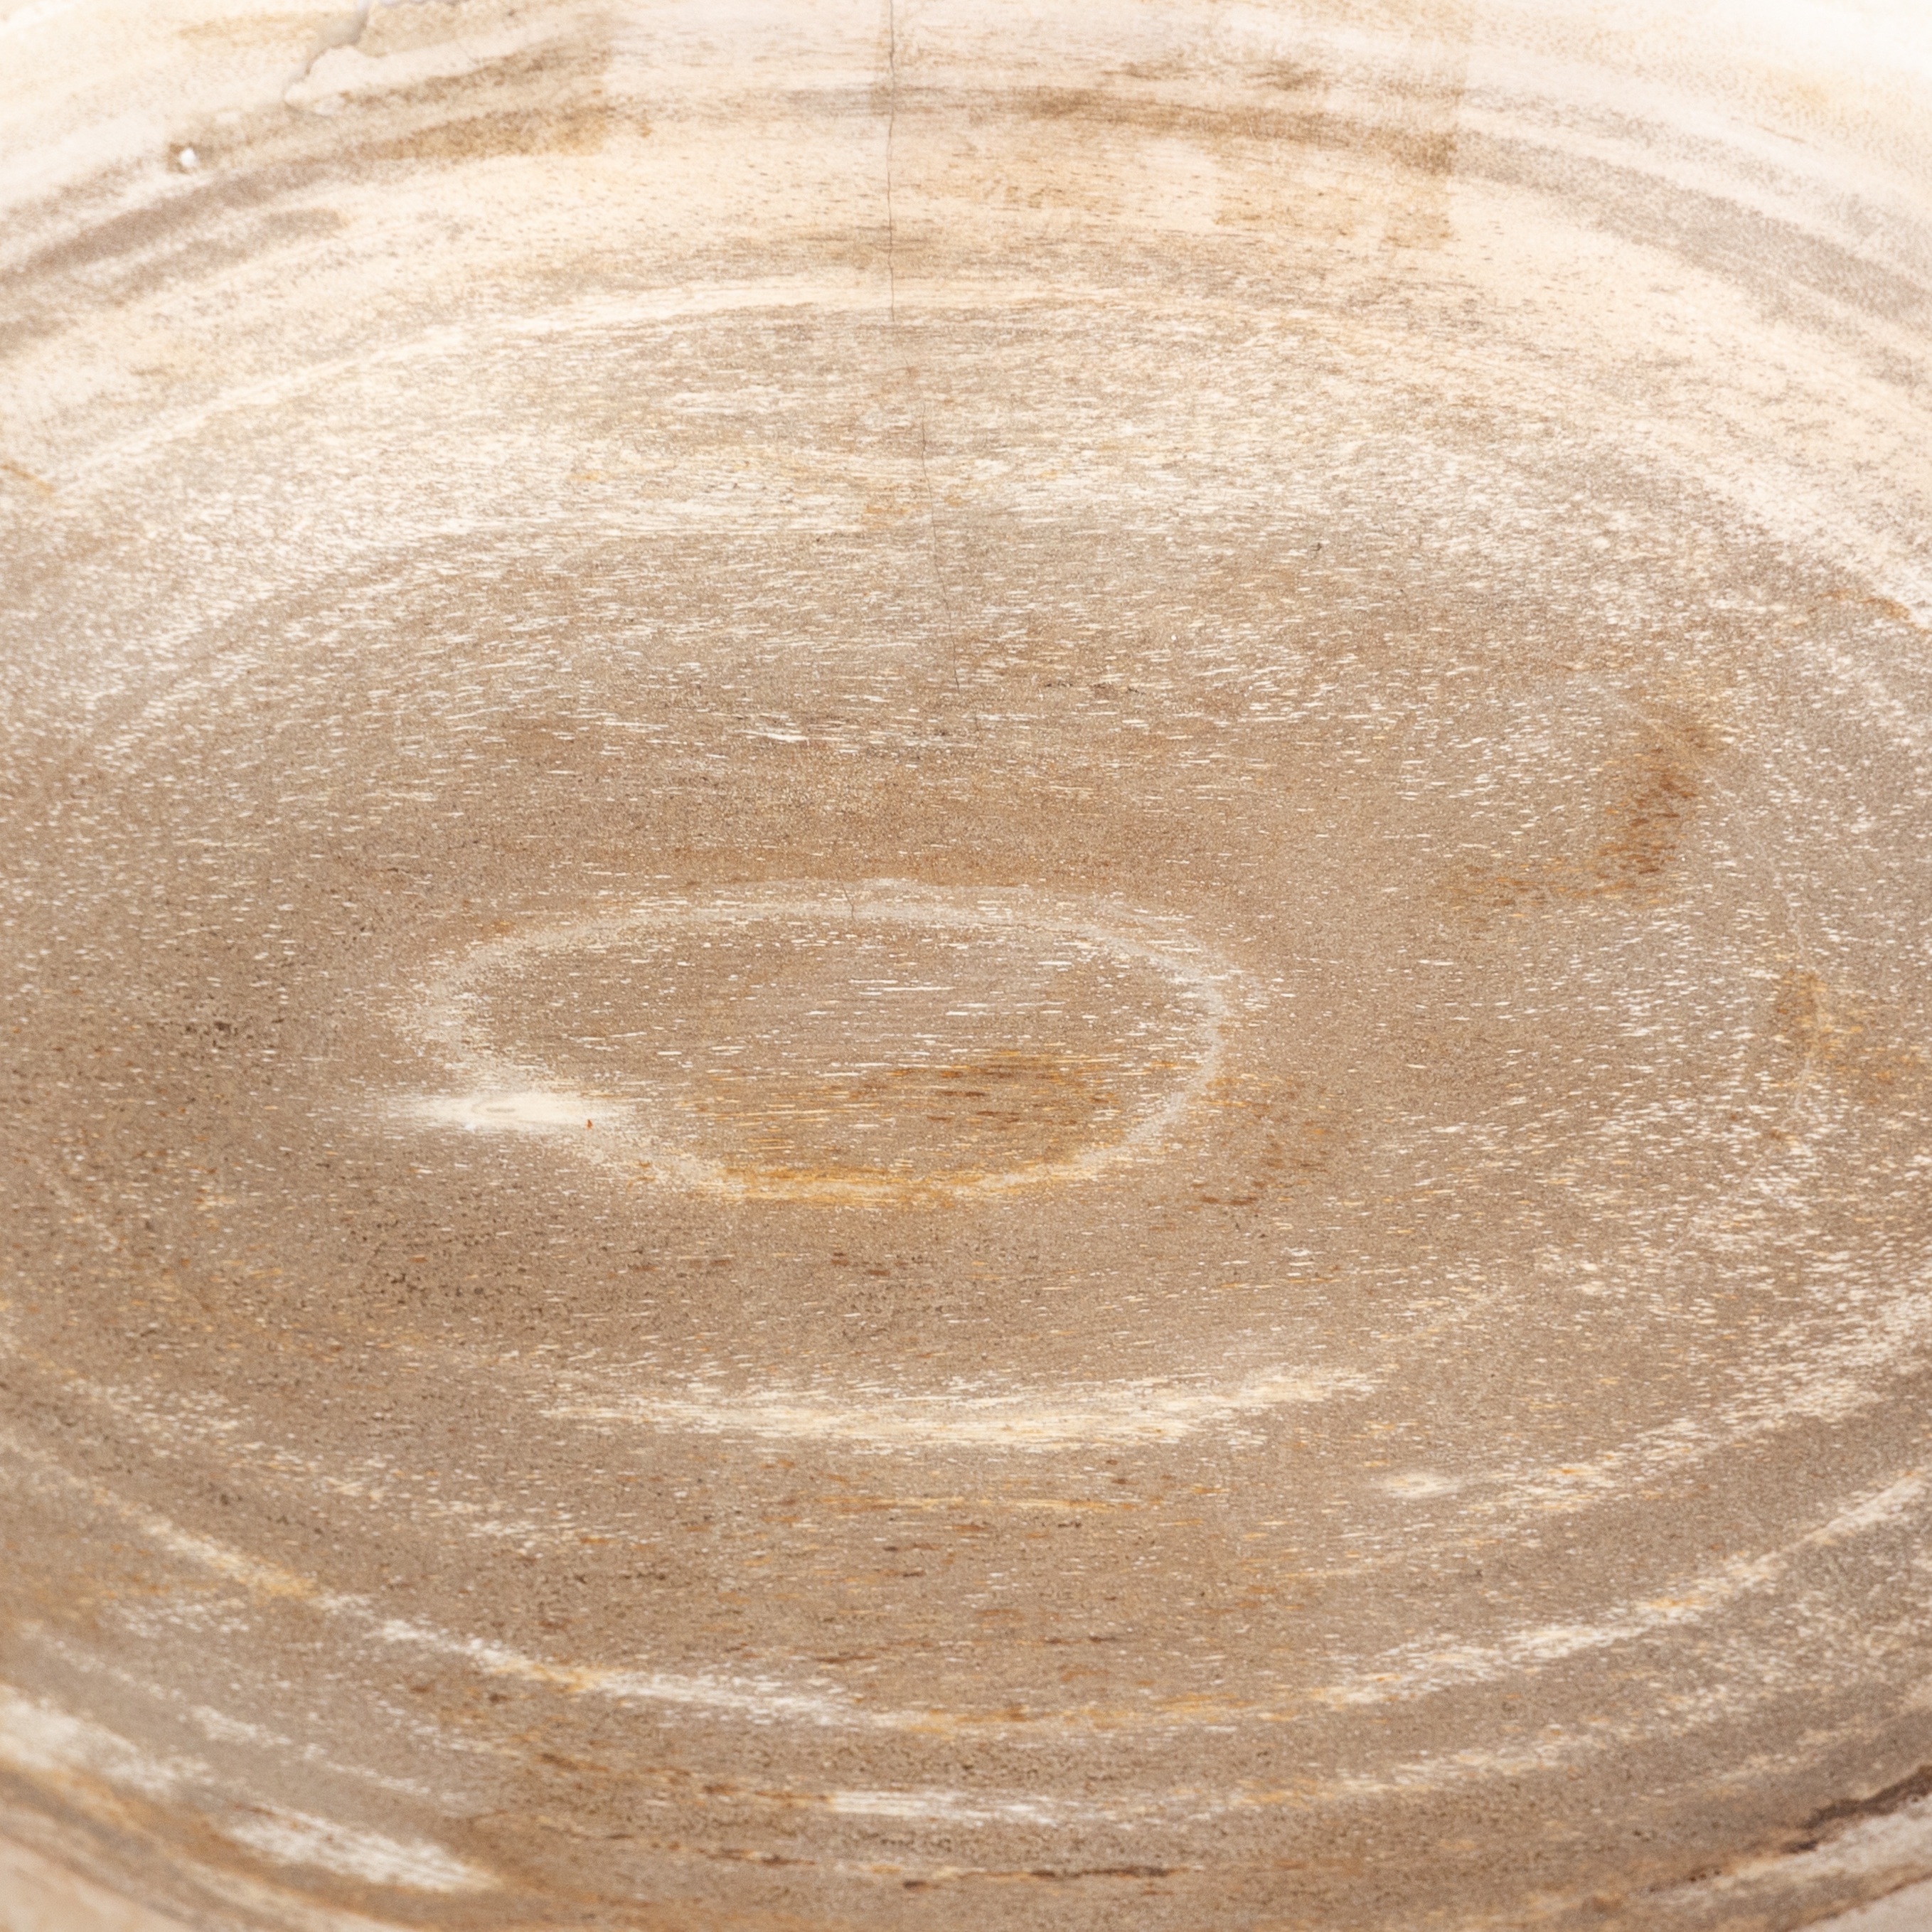 Oval Petrified Wood Bowl-Petrified Wood - Image 12